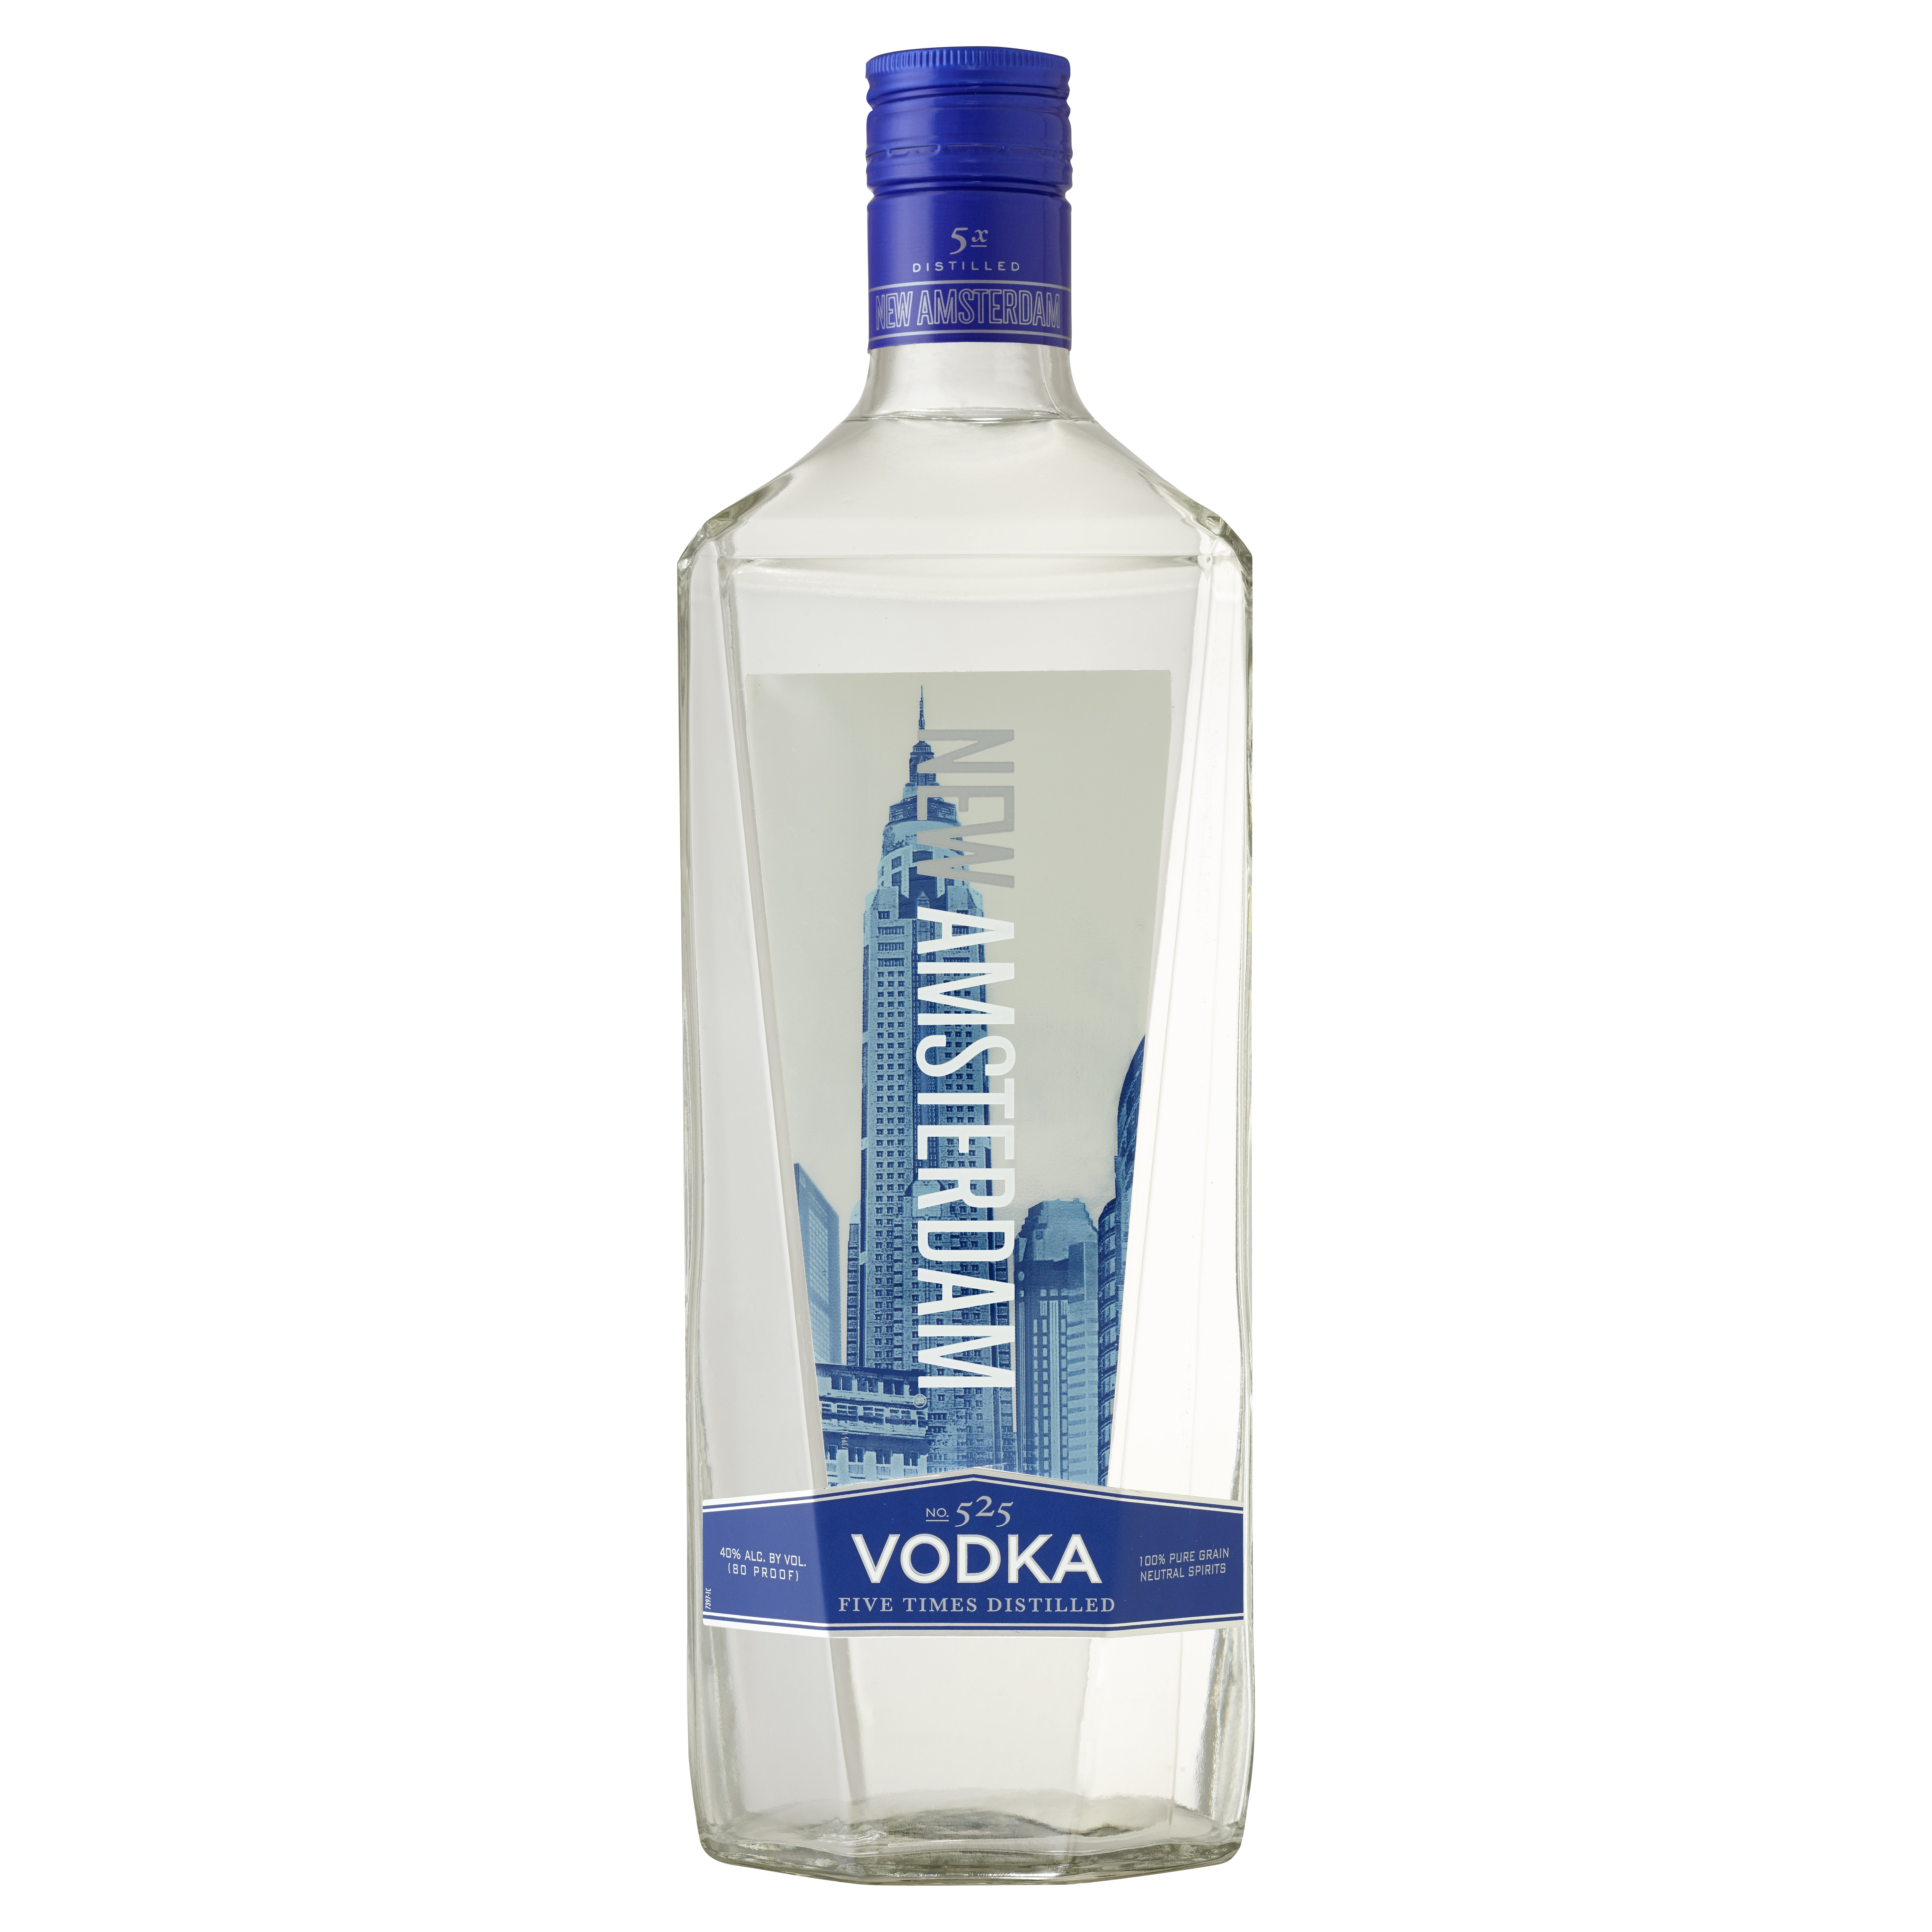 2021 High Quality 1 Liter Glass Liquor Bottles for Vodka Beverage